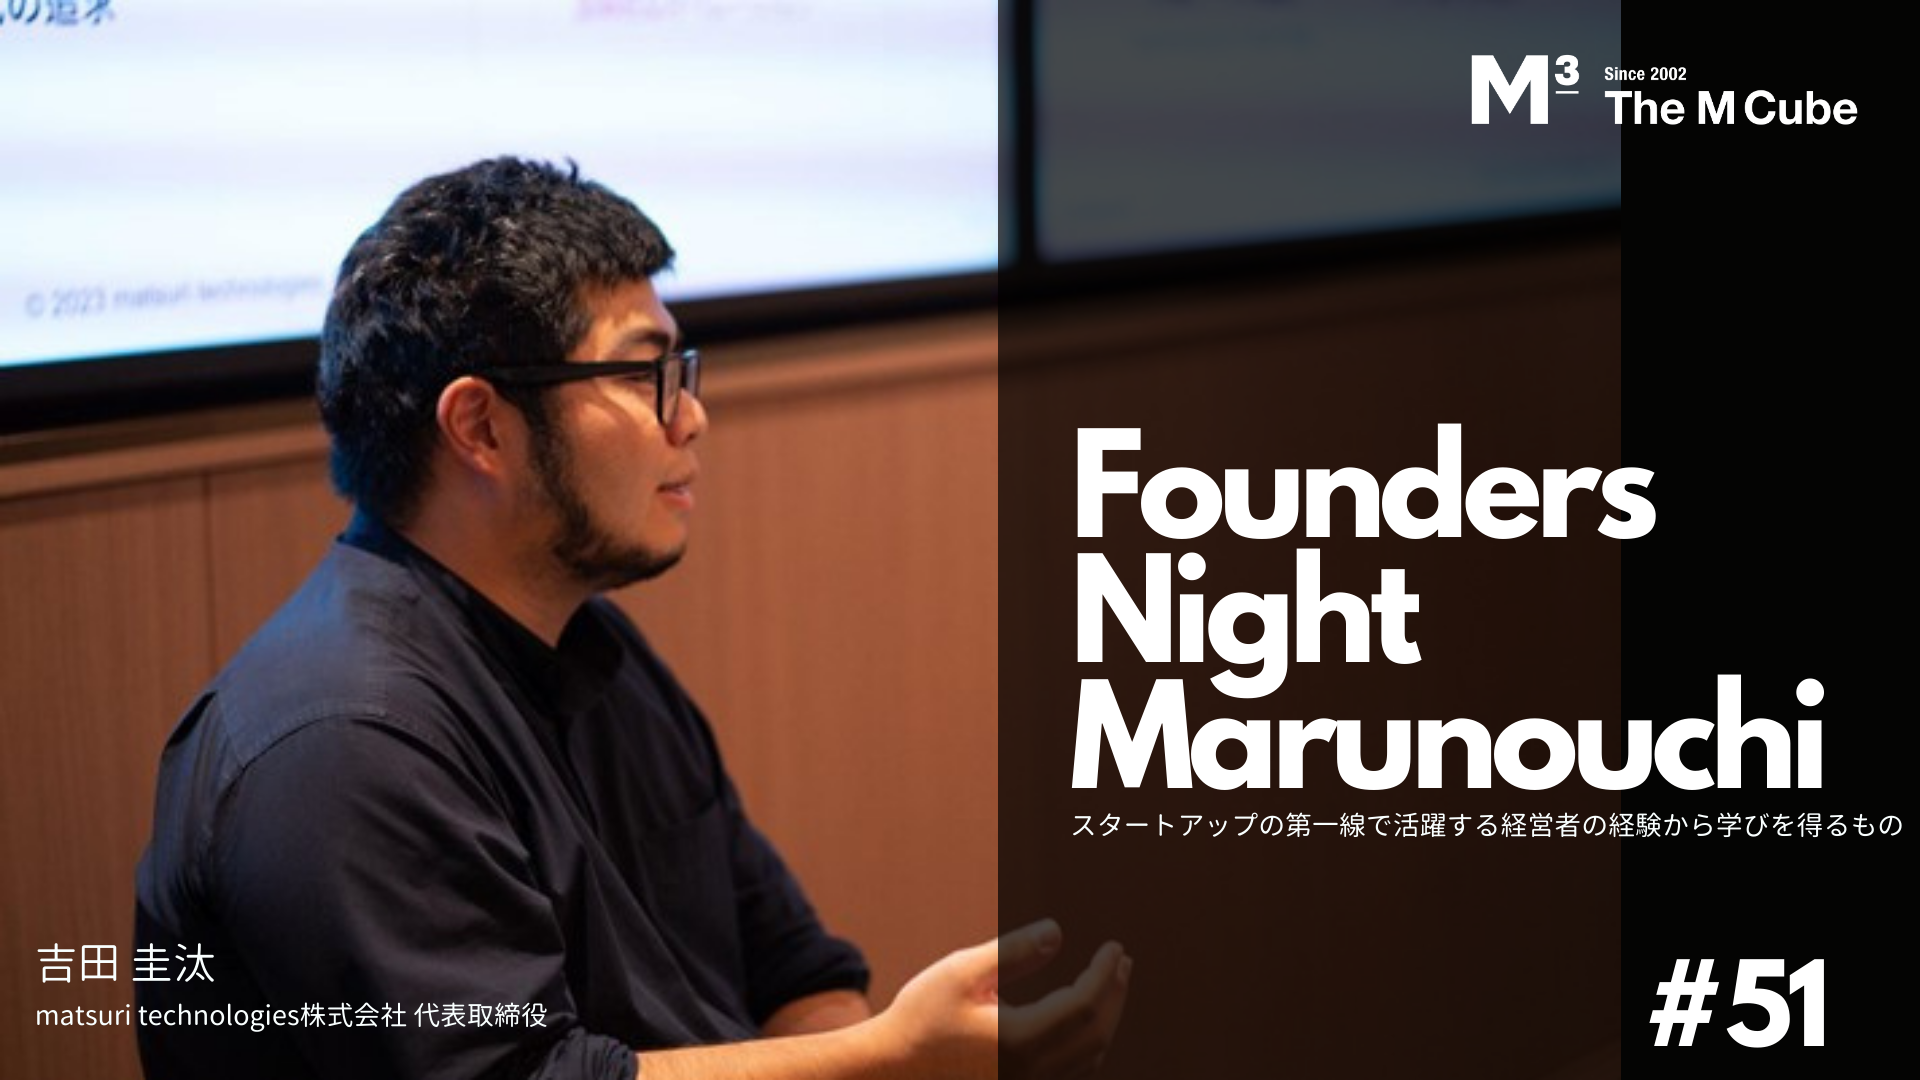 【イベントレポート公開】Founders Night Marunouchi #51 matsuri technologies株式会社 代表取締役 吉田圭汰さん編